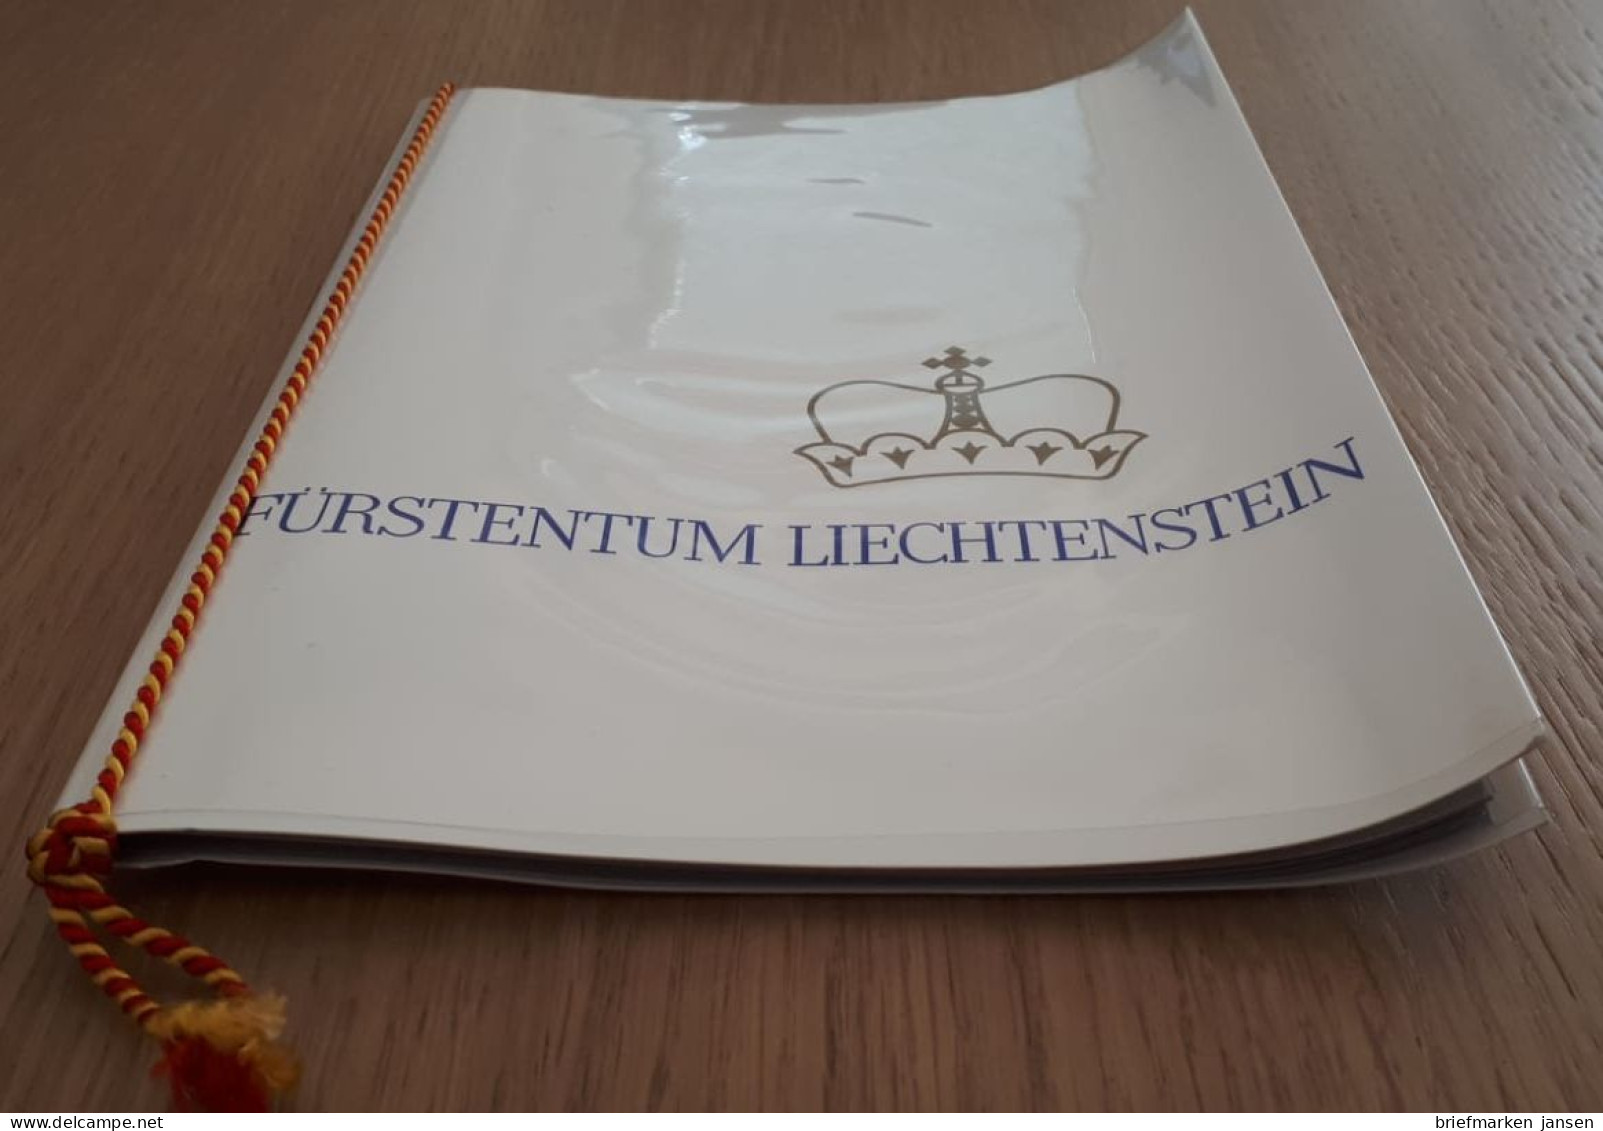 Liechtenstein Heft "Überreicht von der Fürstlichen Regierung" mit Marken aus den